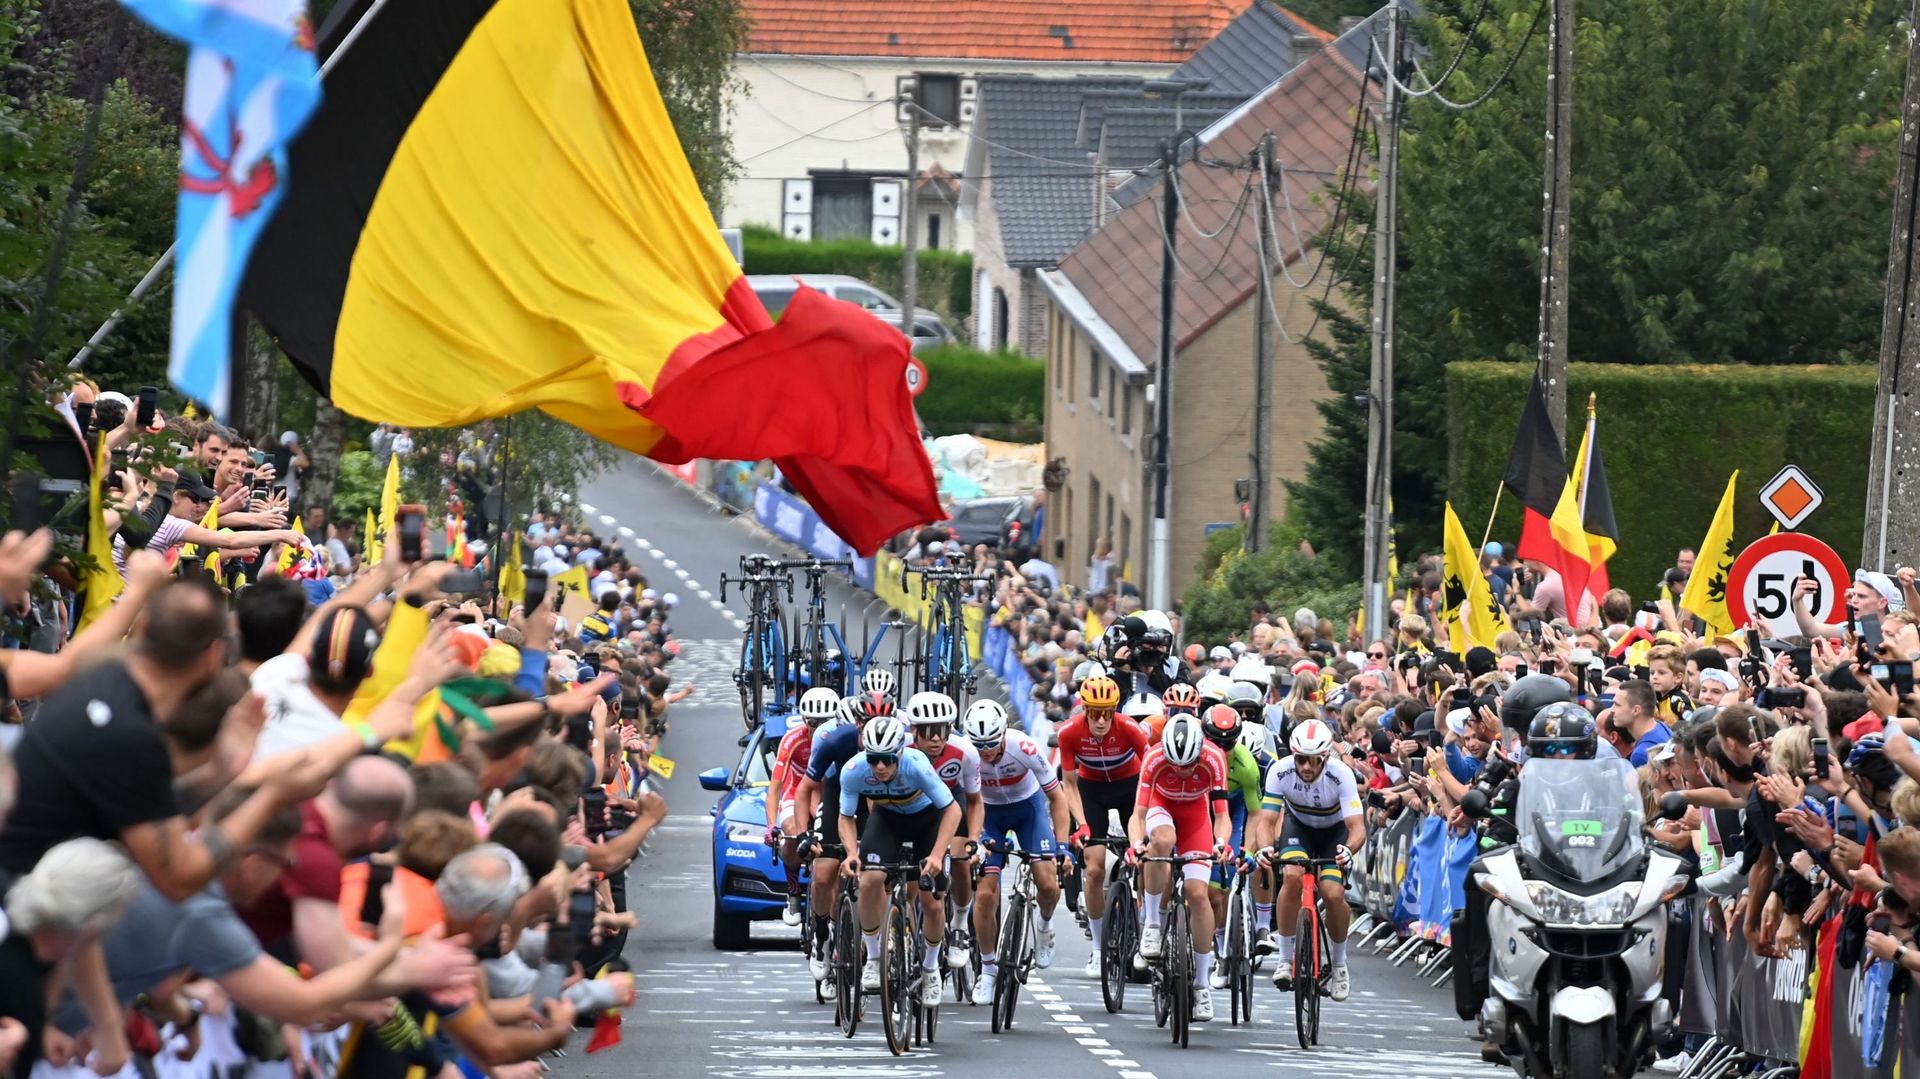 À quand le retour des championnats du monde cycliste en Belgique ? "Au plus vite", espère Thomas Van Den Spiegel, organisateur de l’édition 2021.